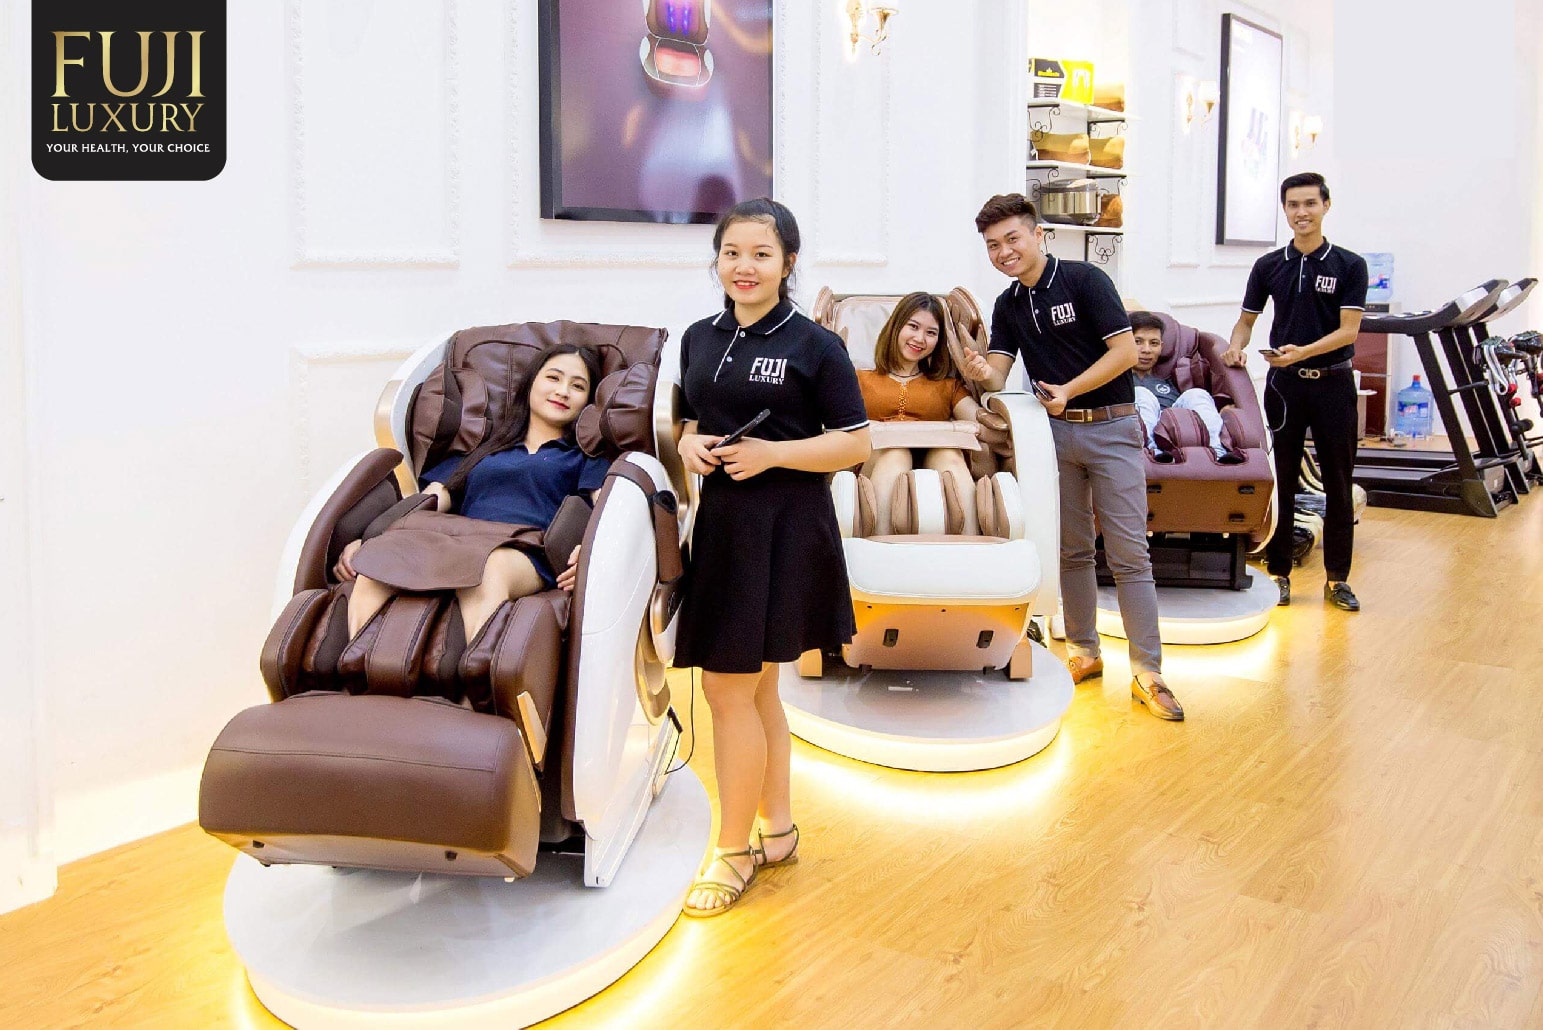 Nhiều khách hàng trẻ tuổi, người làm việc văn phòng cũng đã bắt đầu quan tâm đến những sản phẩm ghế massage.